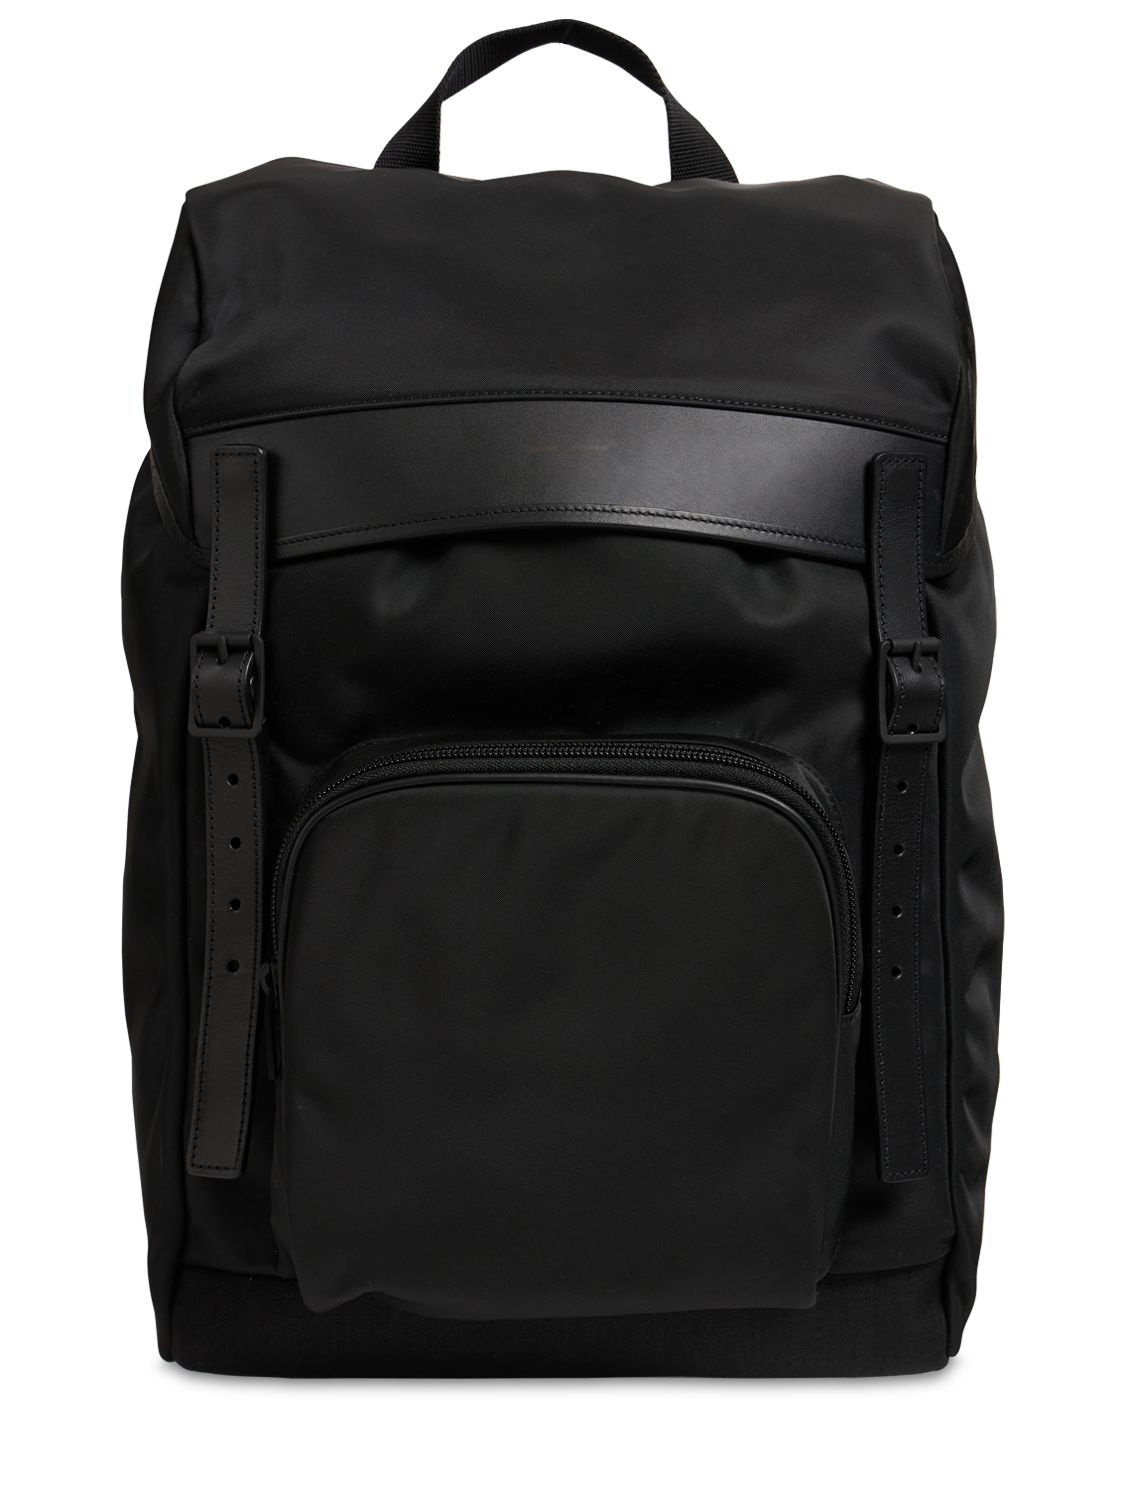 Saint Laurent City flap backpack | Smart Closet